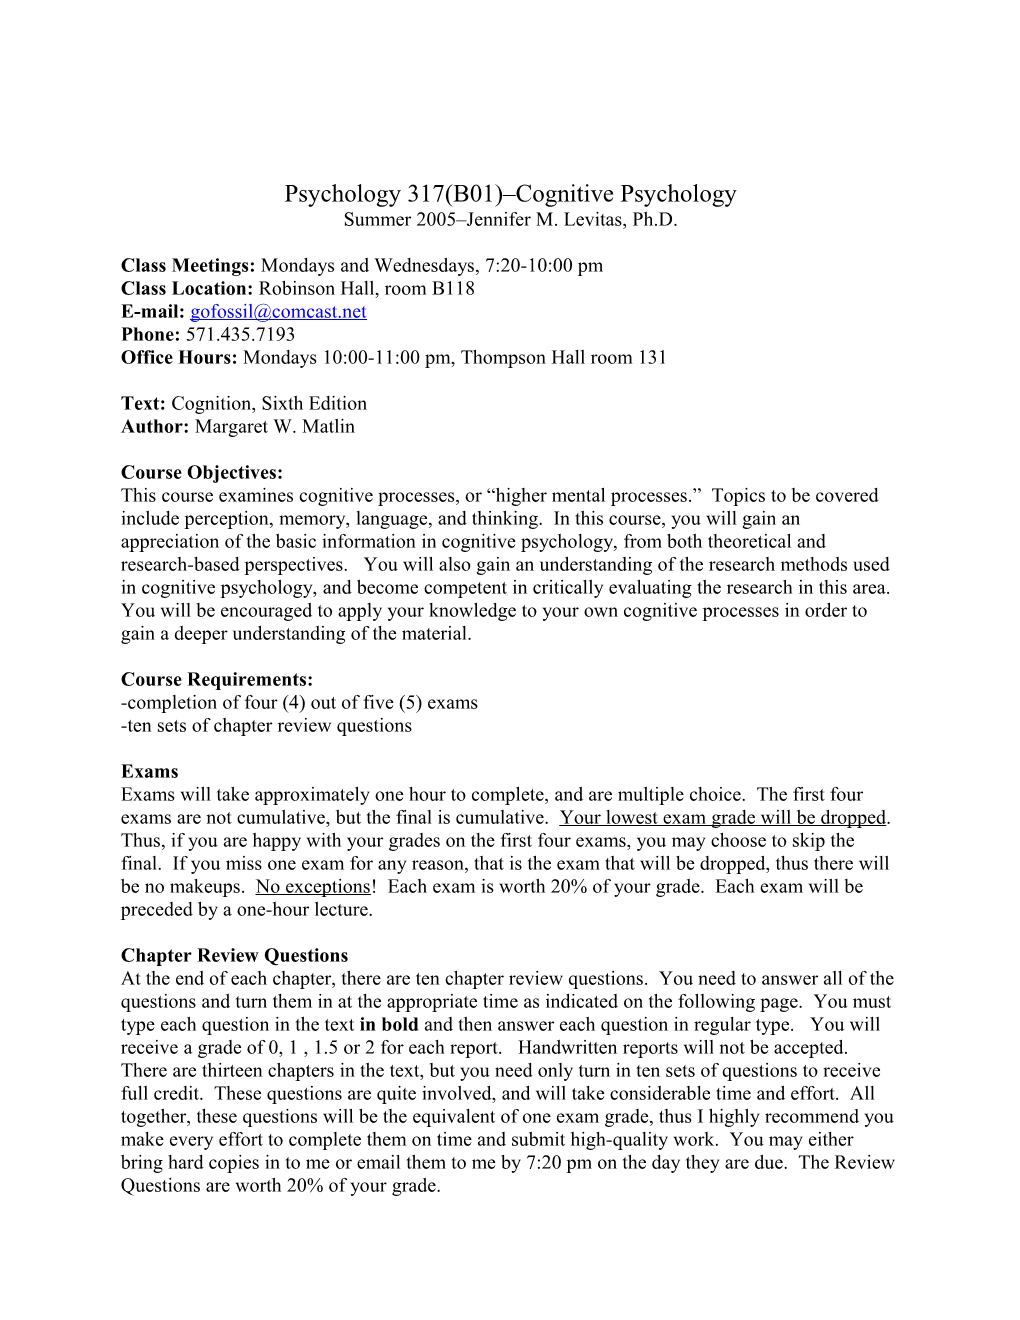 Psychology 317(B01) Cognitive Psychology